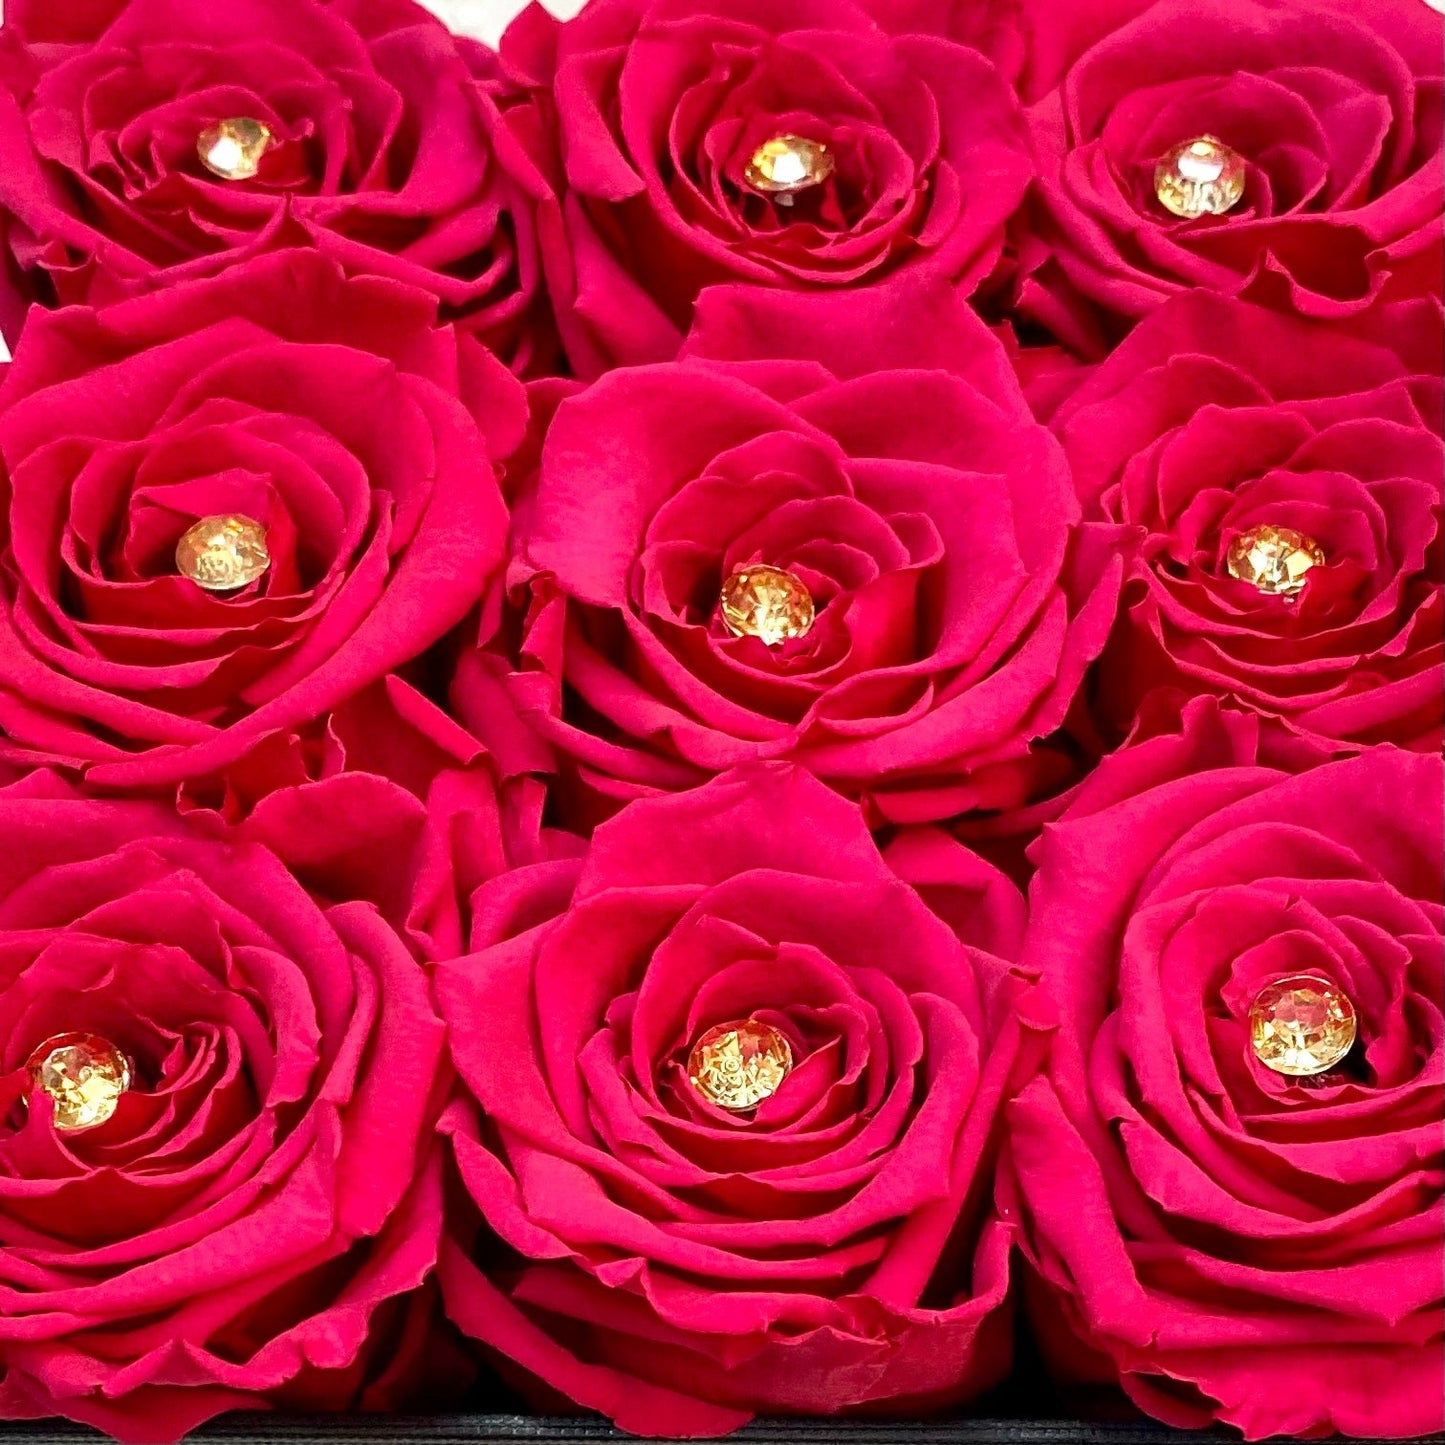 Diamanté option | Pink Roses with diamanté in each| Bling Blooms 